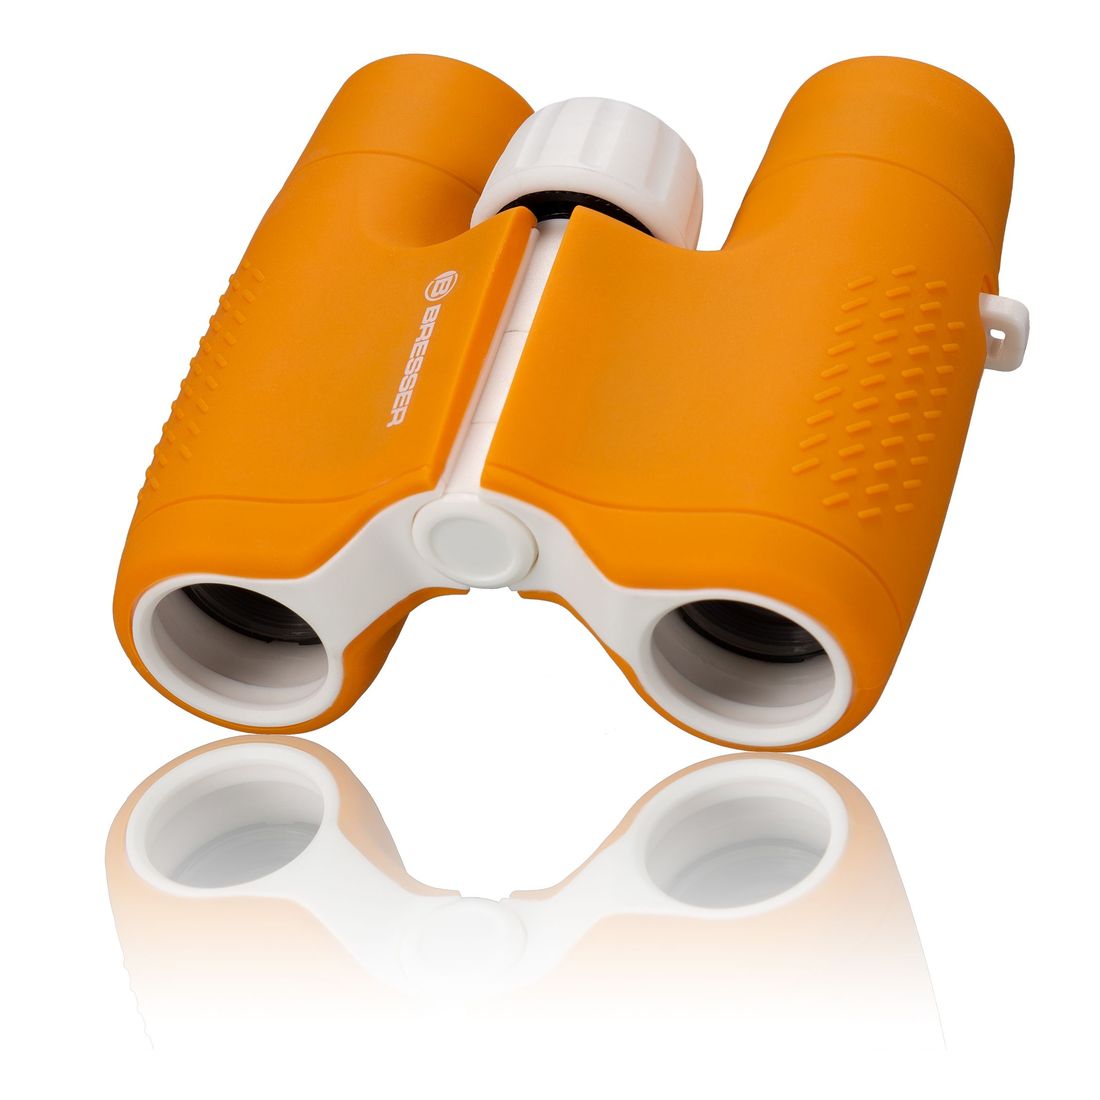 Bresser JUNIOR 6x21 children's binoculars - Orange